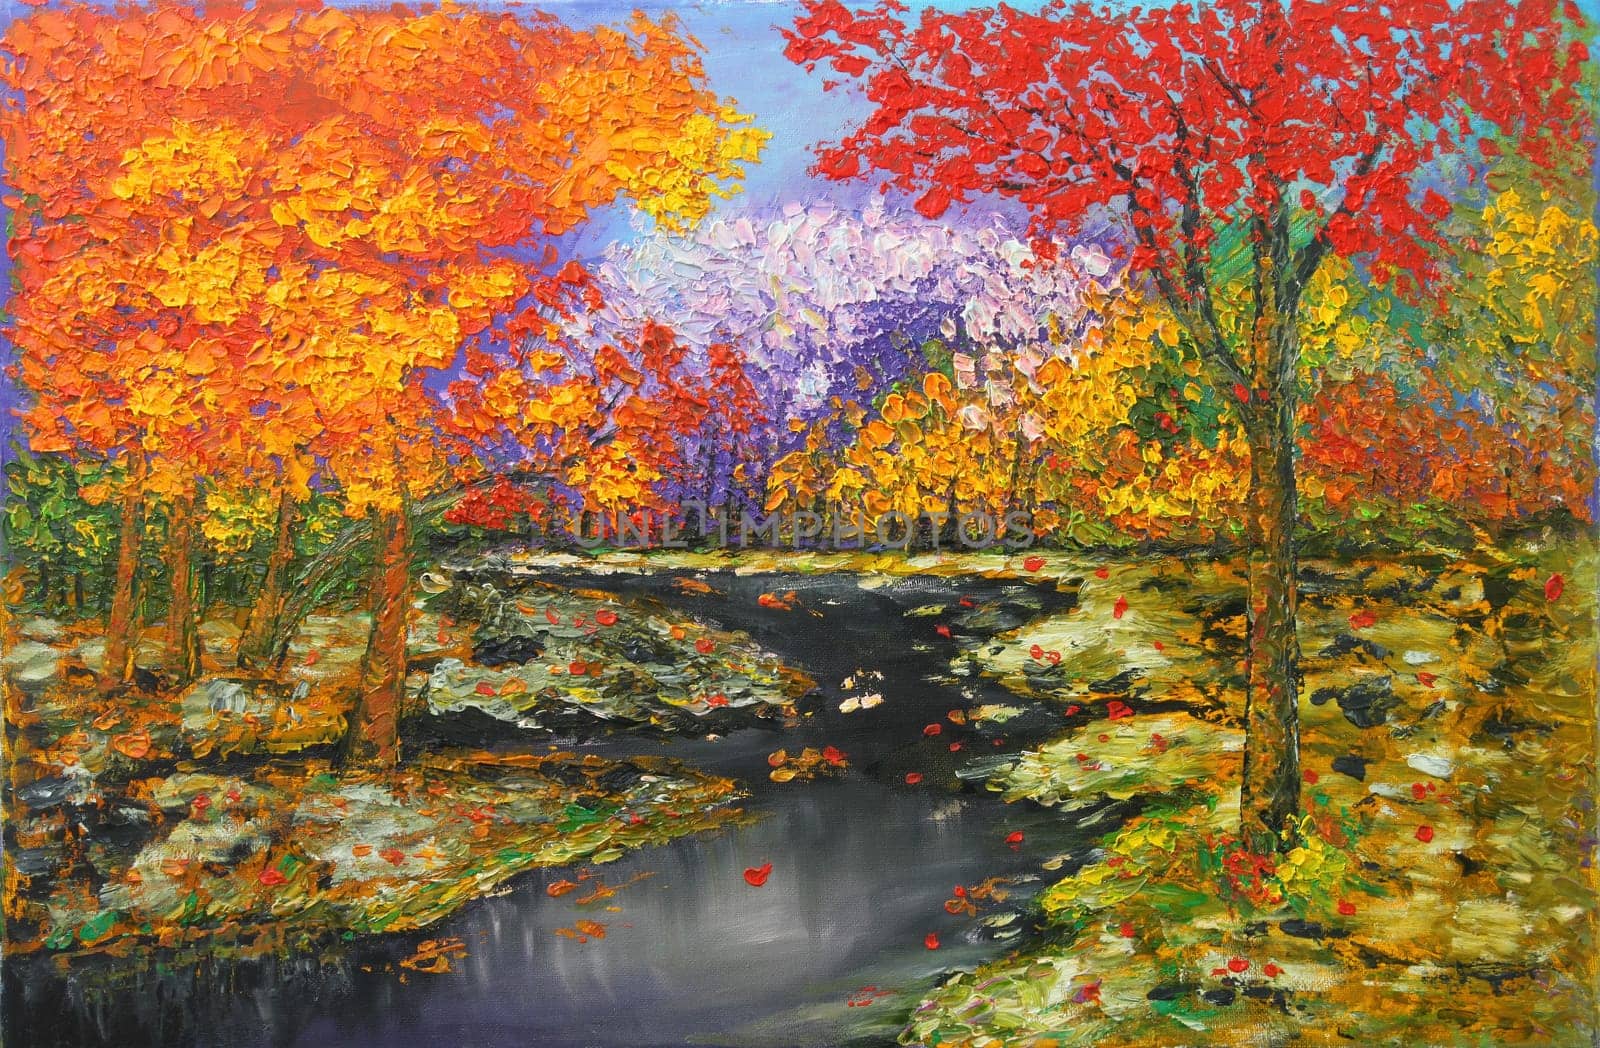 Winter river running through colorful autumn forest by jarenwicklund